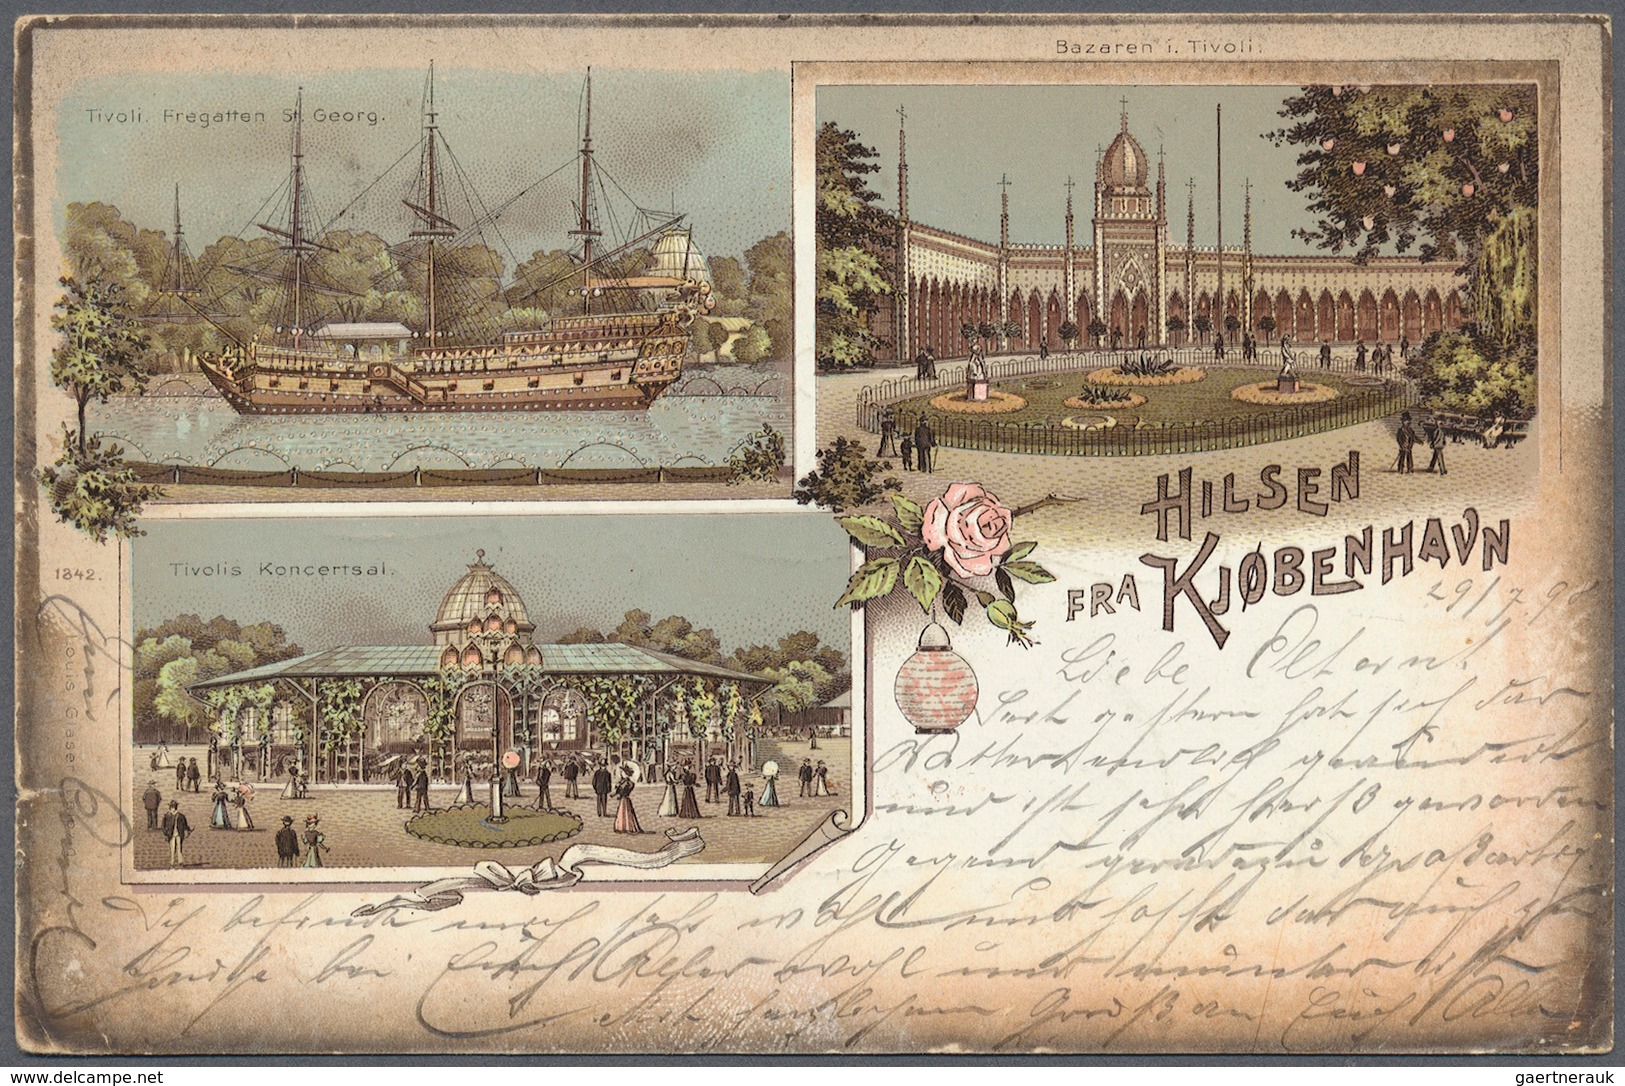 Dänemark: 1890 (ab), dabei interessante Ganzsachen, Flugpost, alte Ansichtskarten, Perfins u. a.